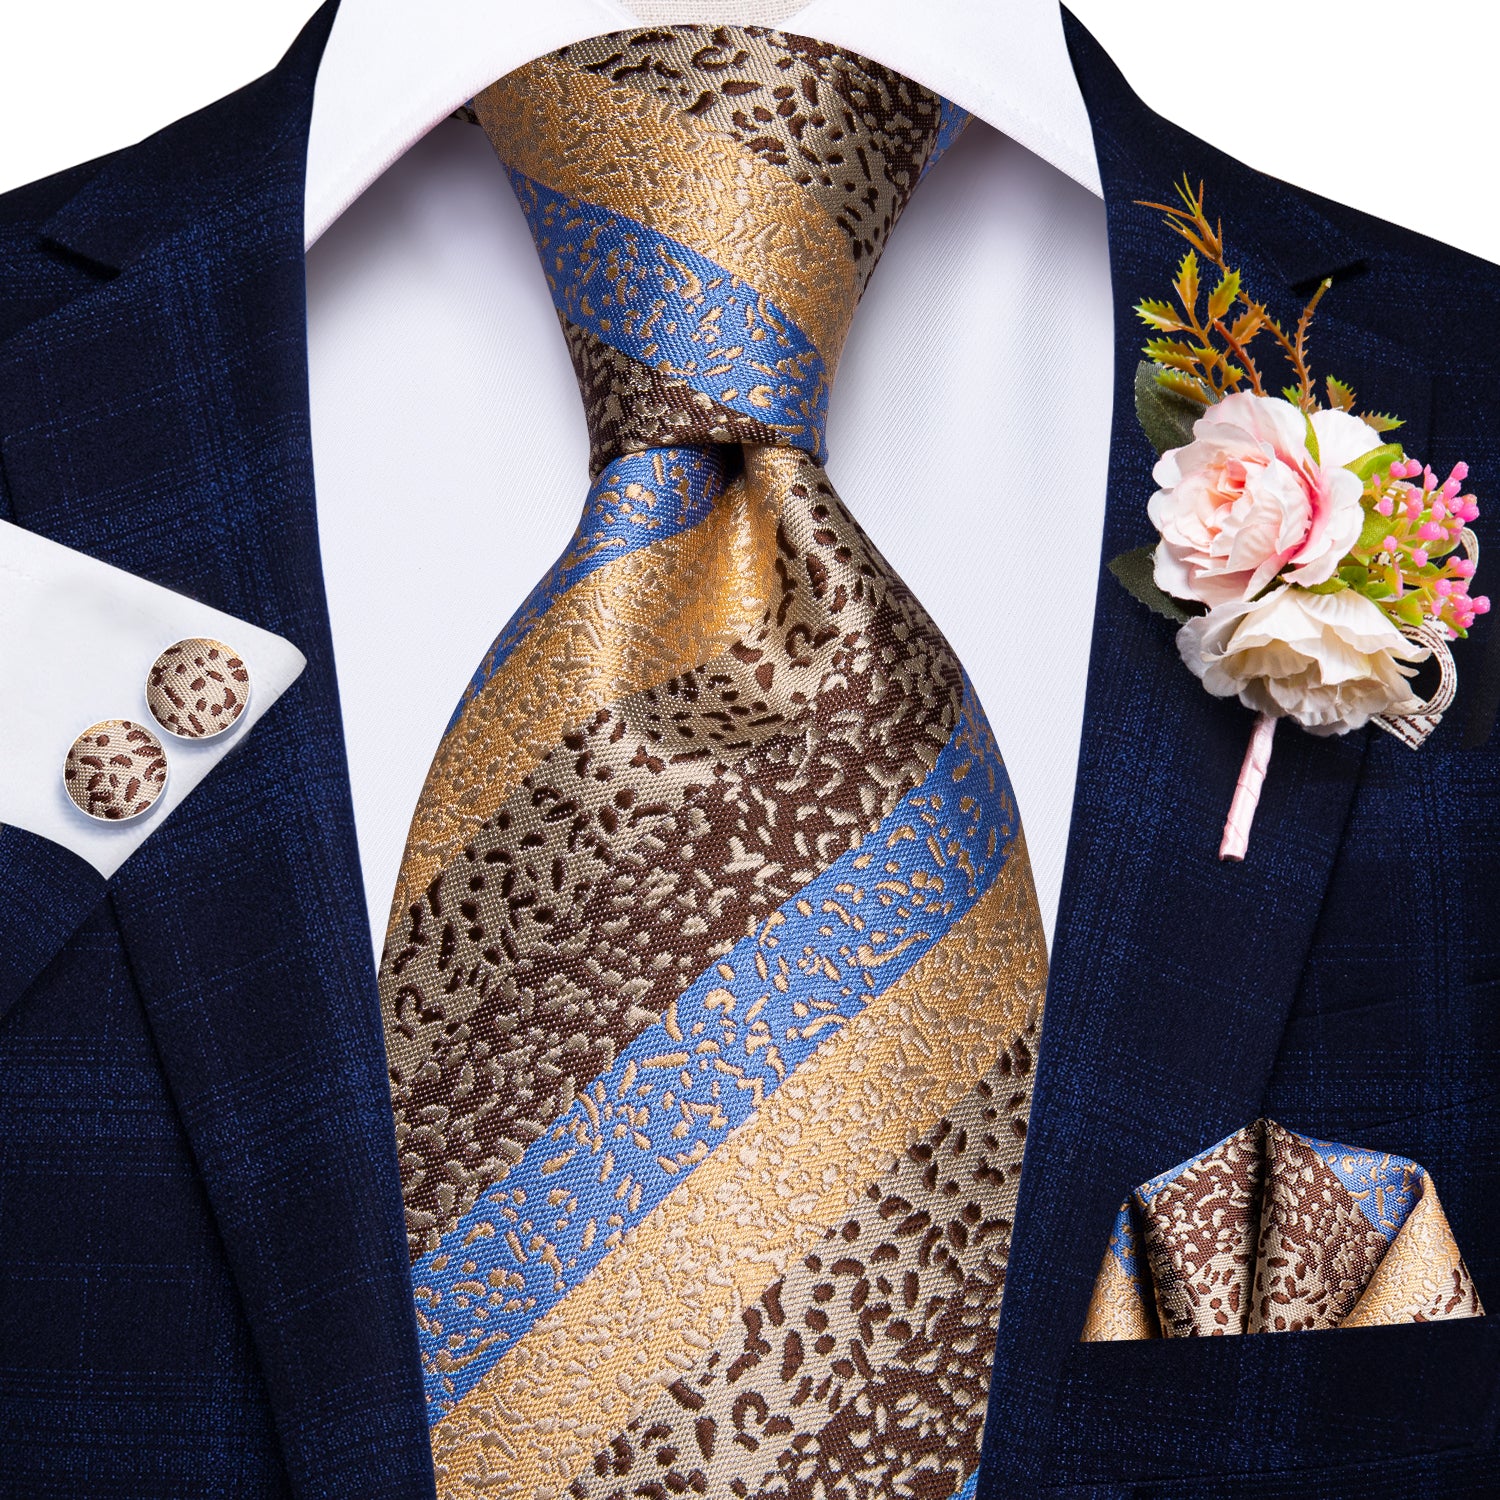 Blue Brown Striped Tie Handkerchief Cufflinks Set with Wedding Brooch